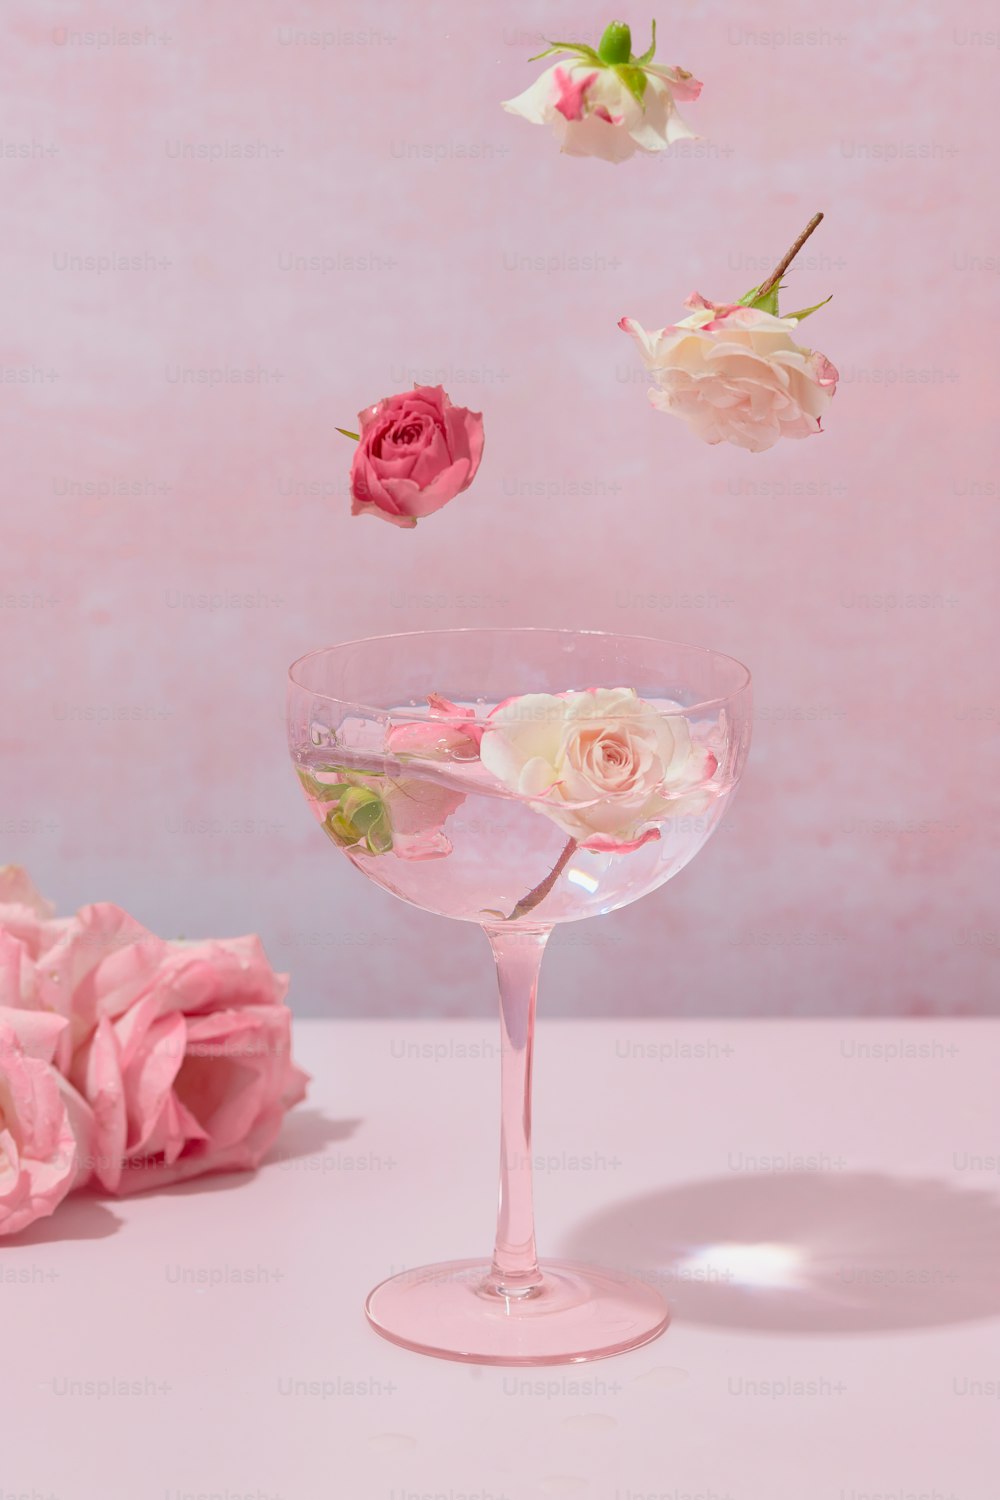 ein Glas gefüllt mit Flüssigkeit und Blumen, die in der Luft schweben